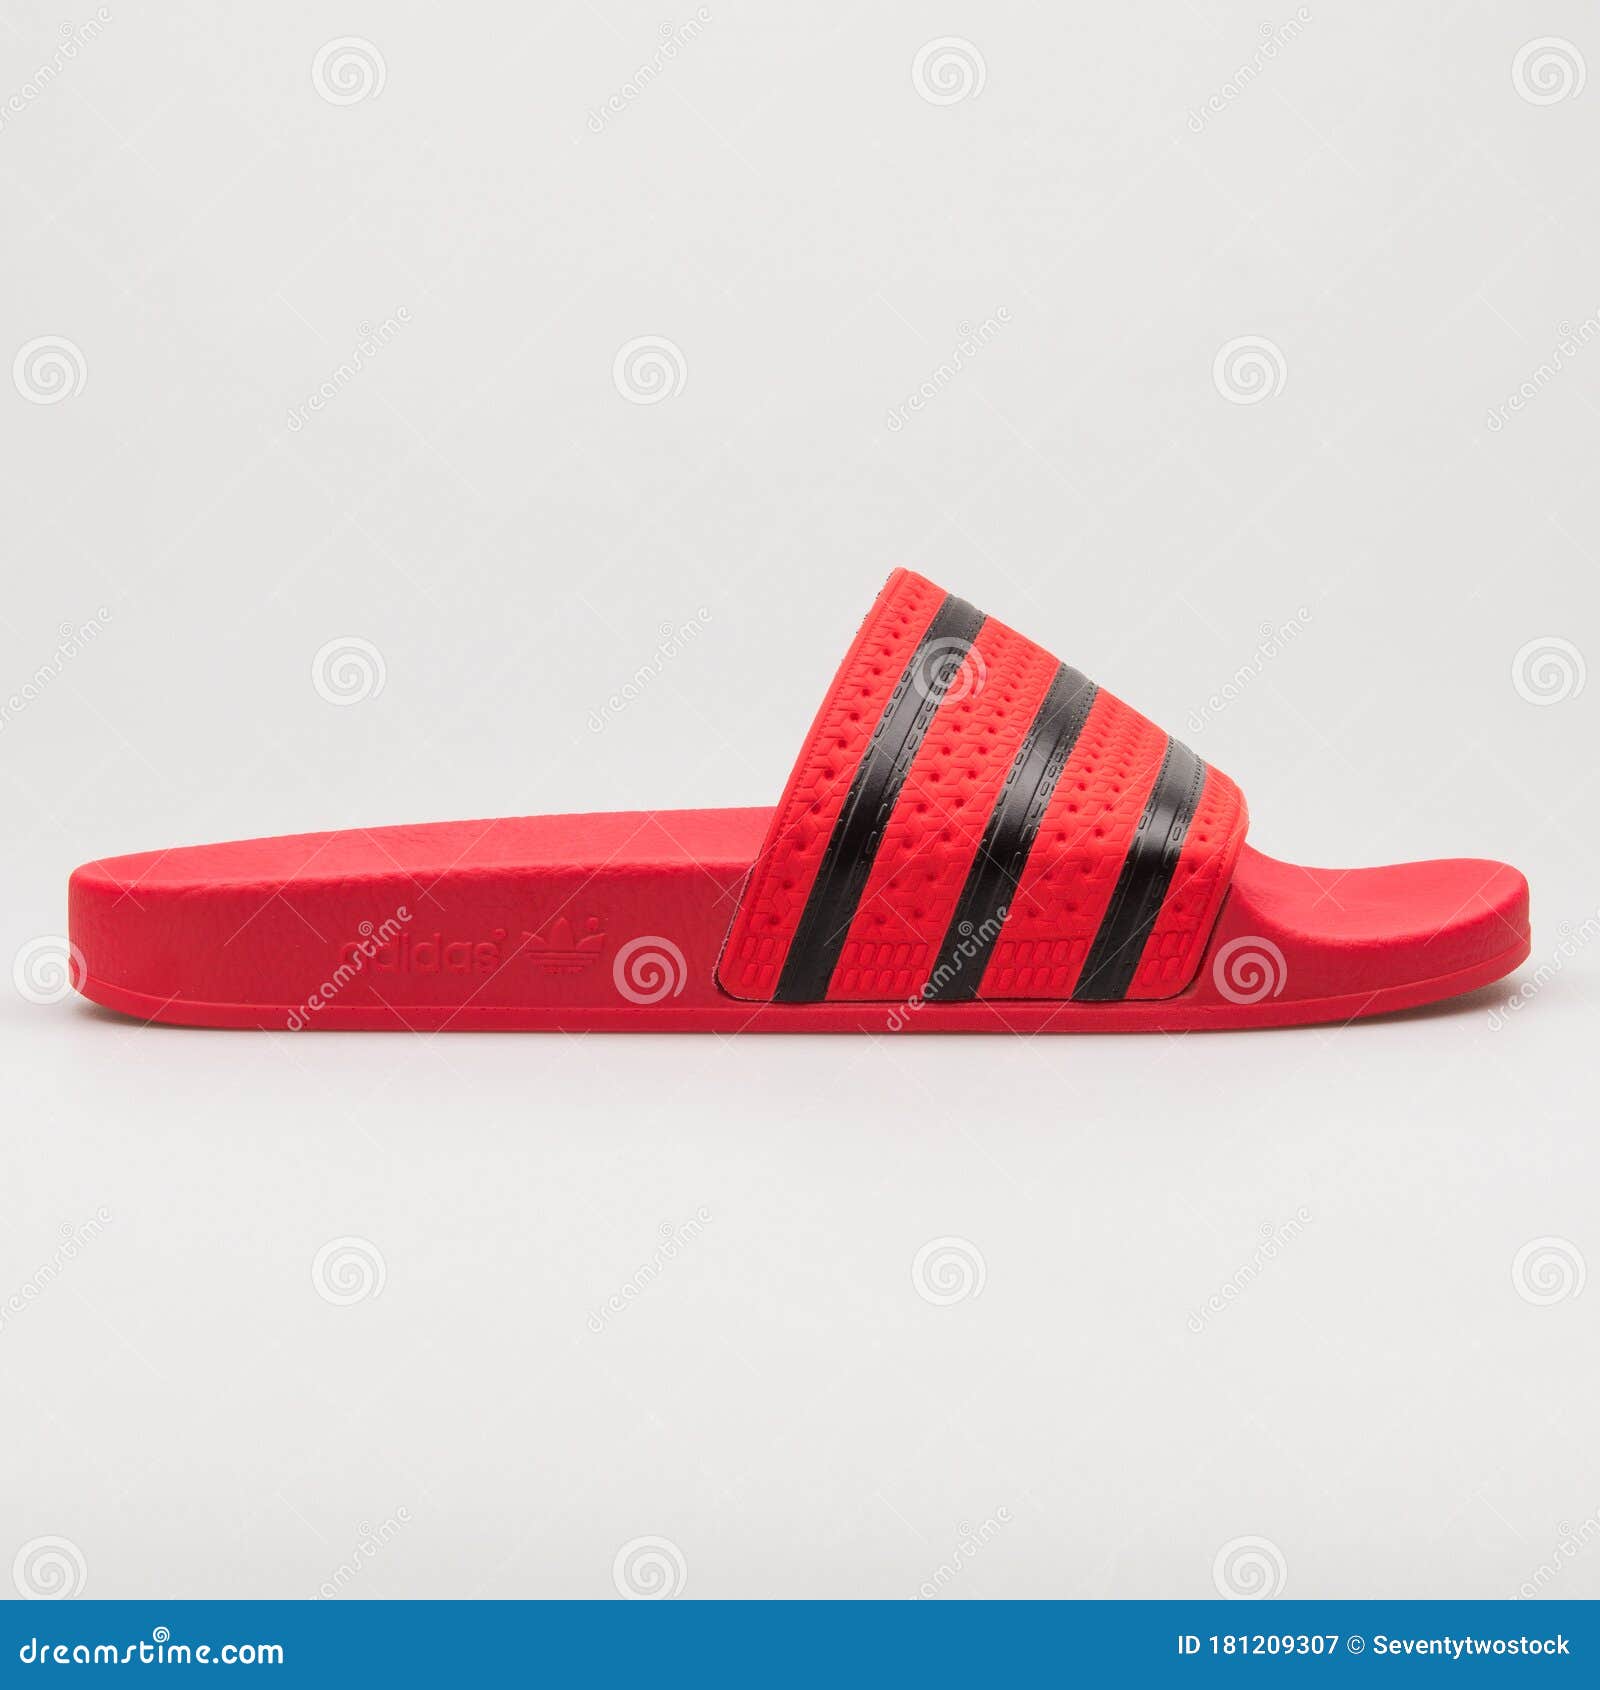 adidas adilette red black